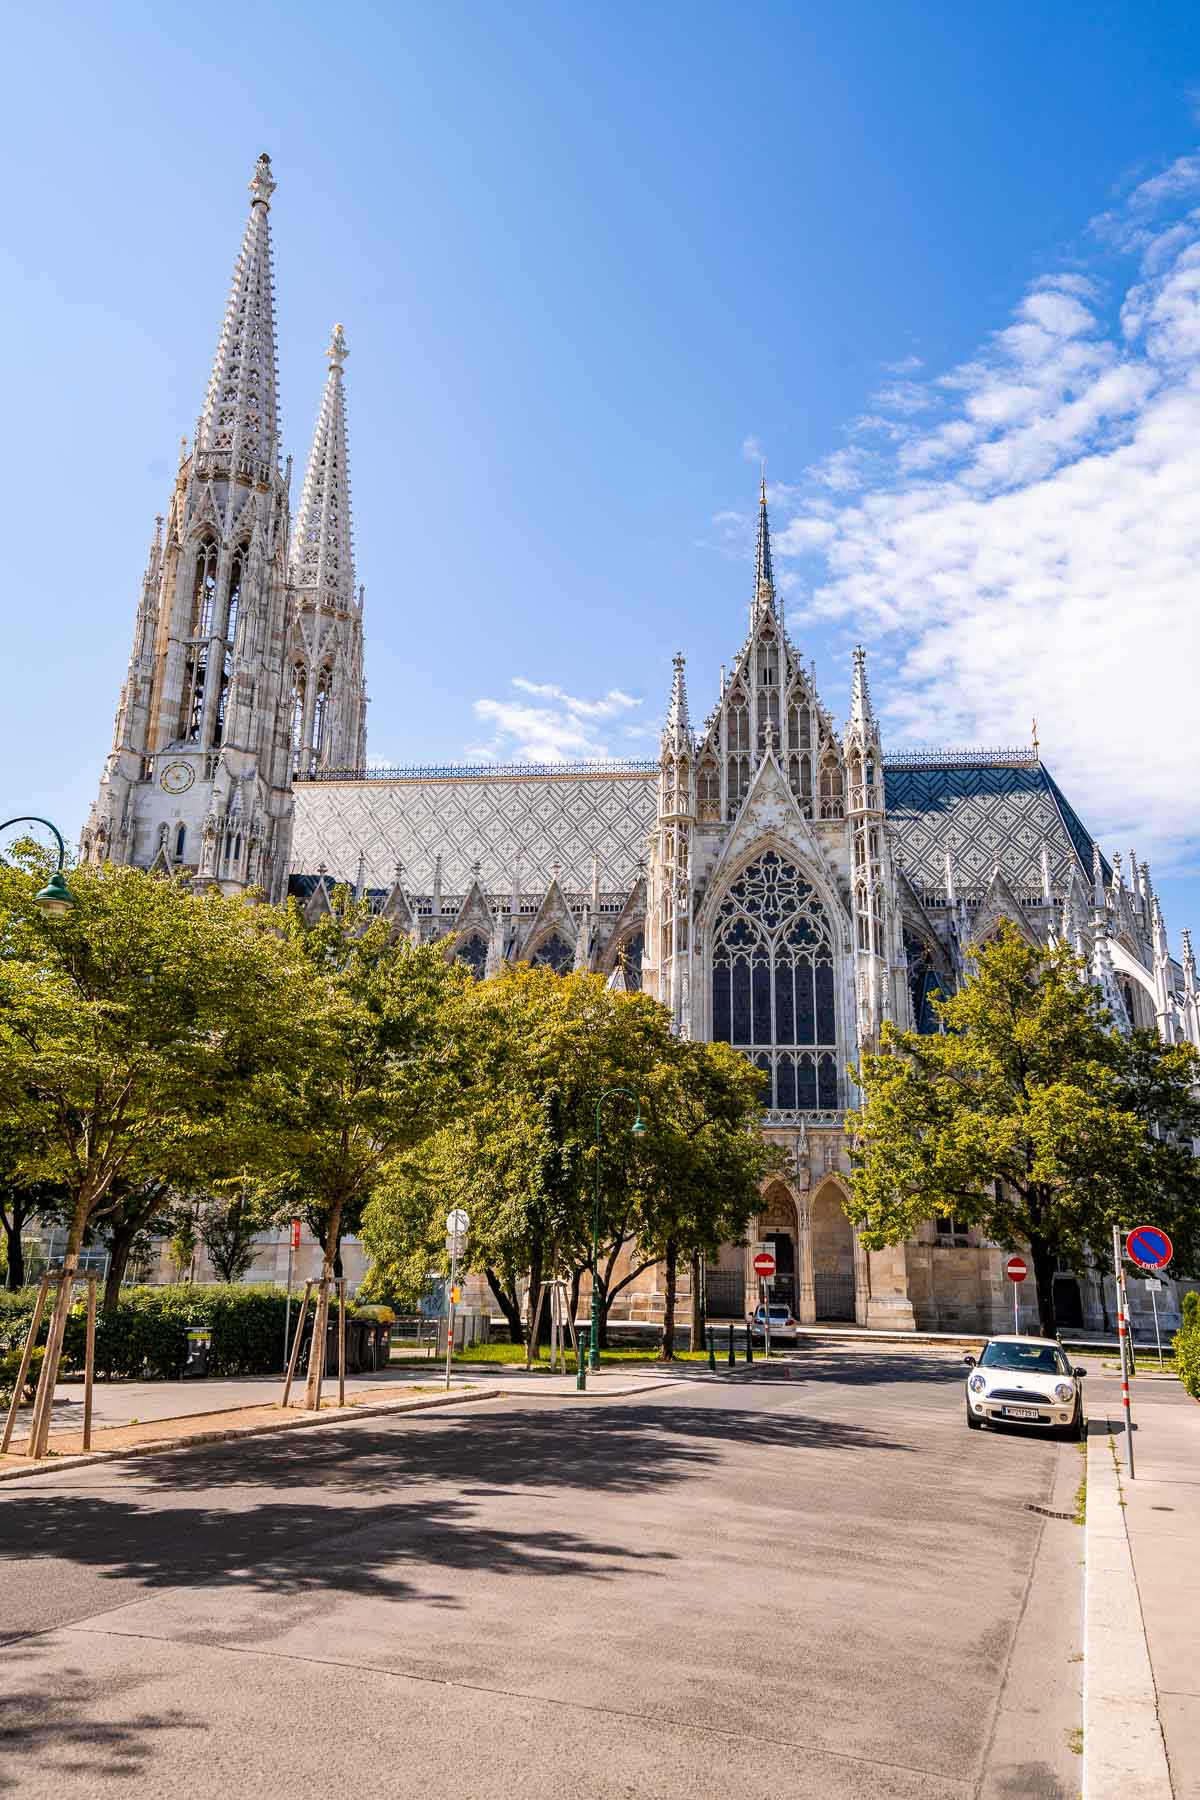 Votivkirche in Vienna, Austria